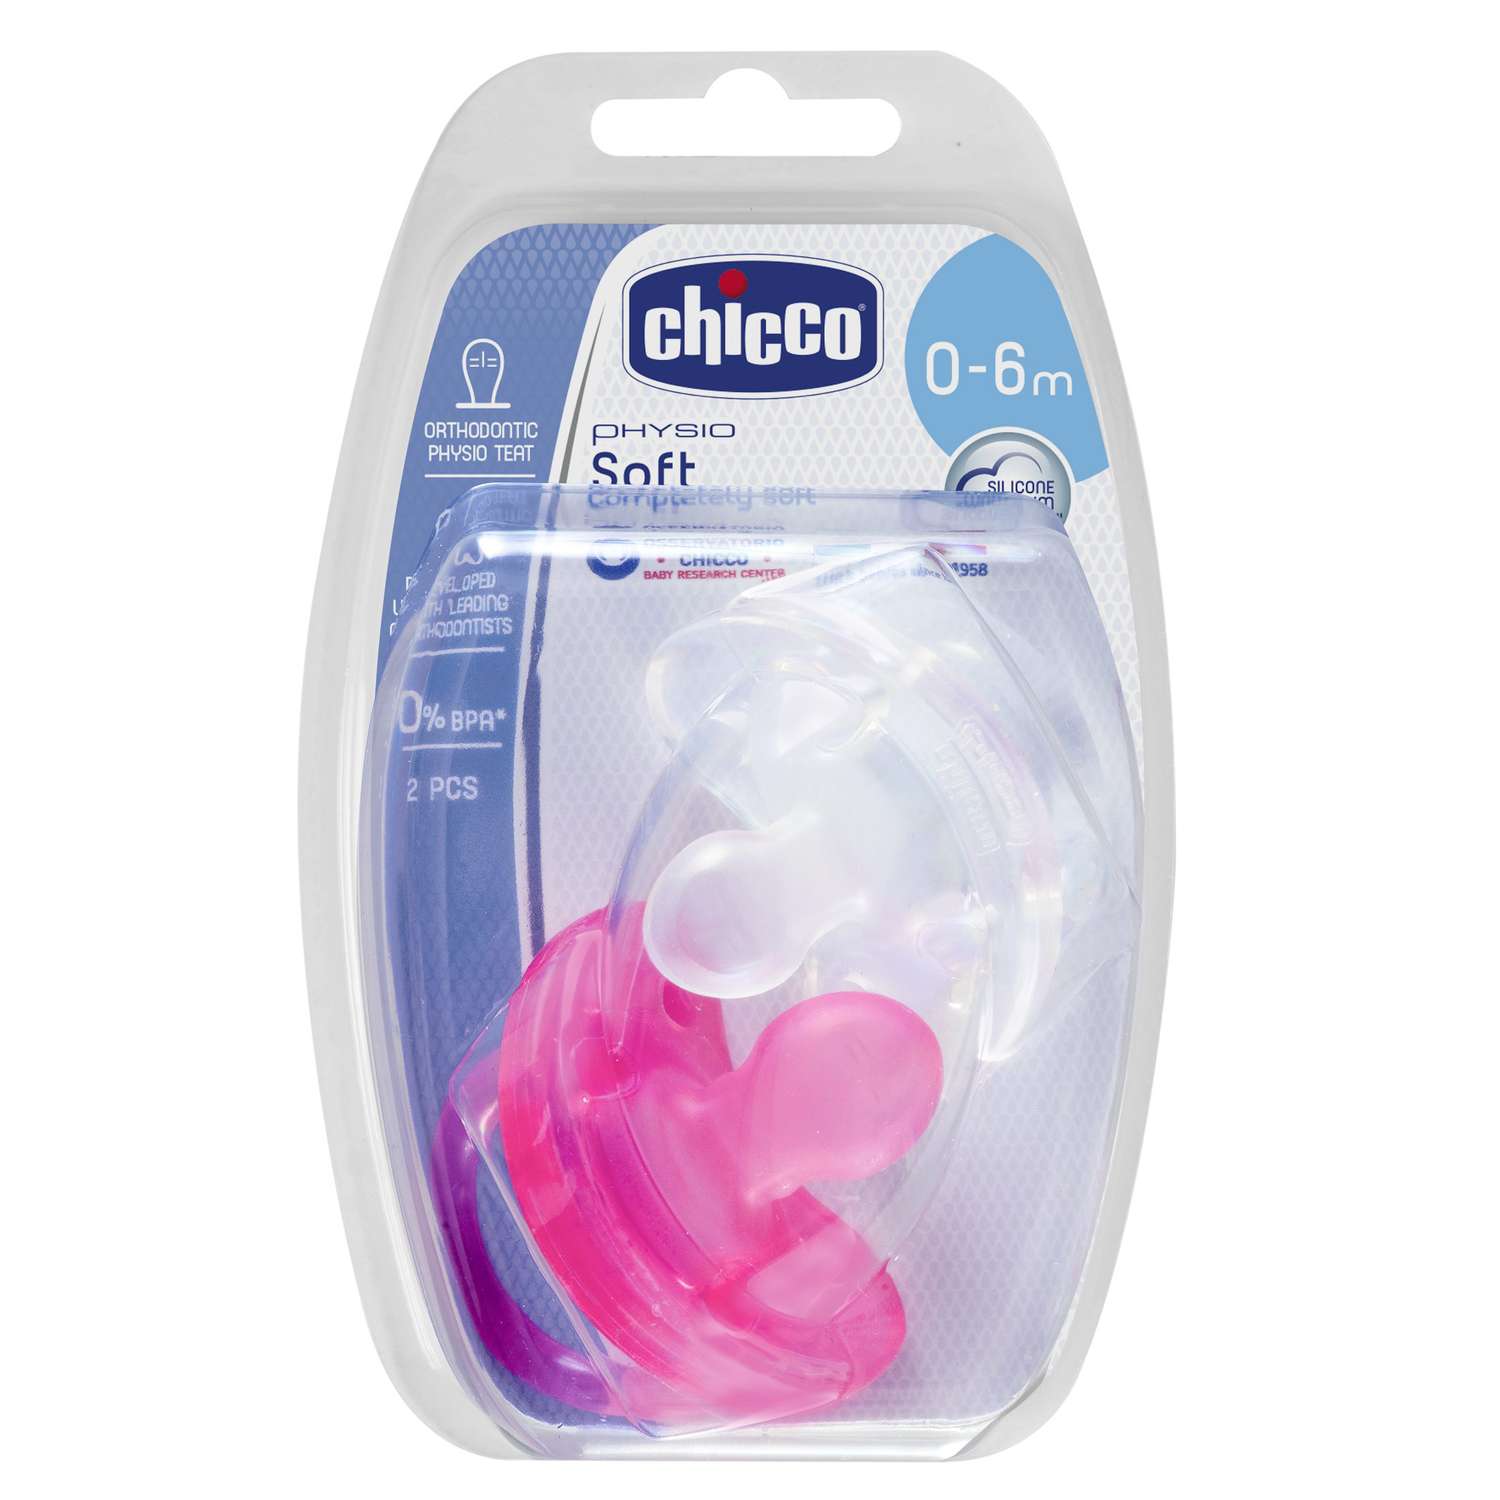 Пустышка Chicco Physio Soft силиконовая для девочек с 0-6 мес. 2 шт - фото 4